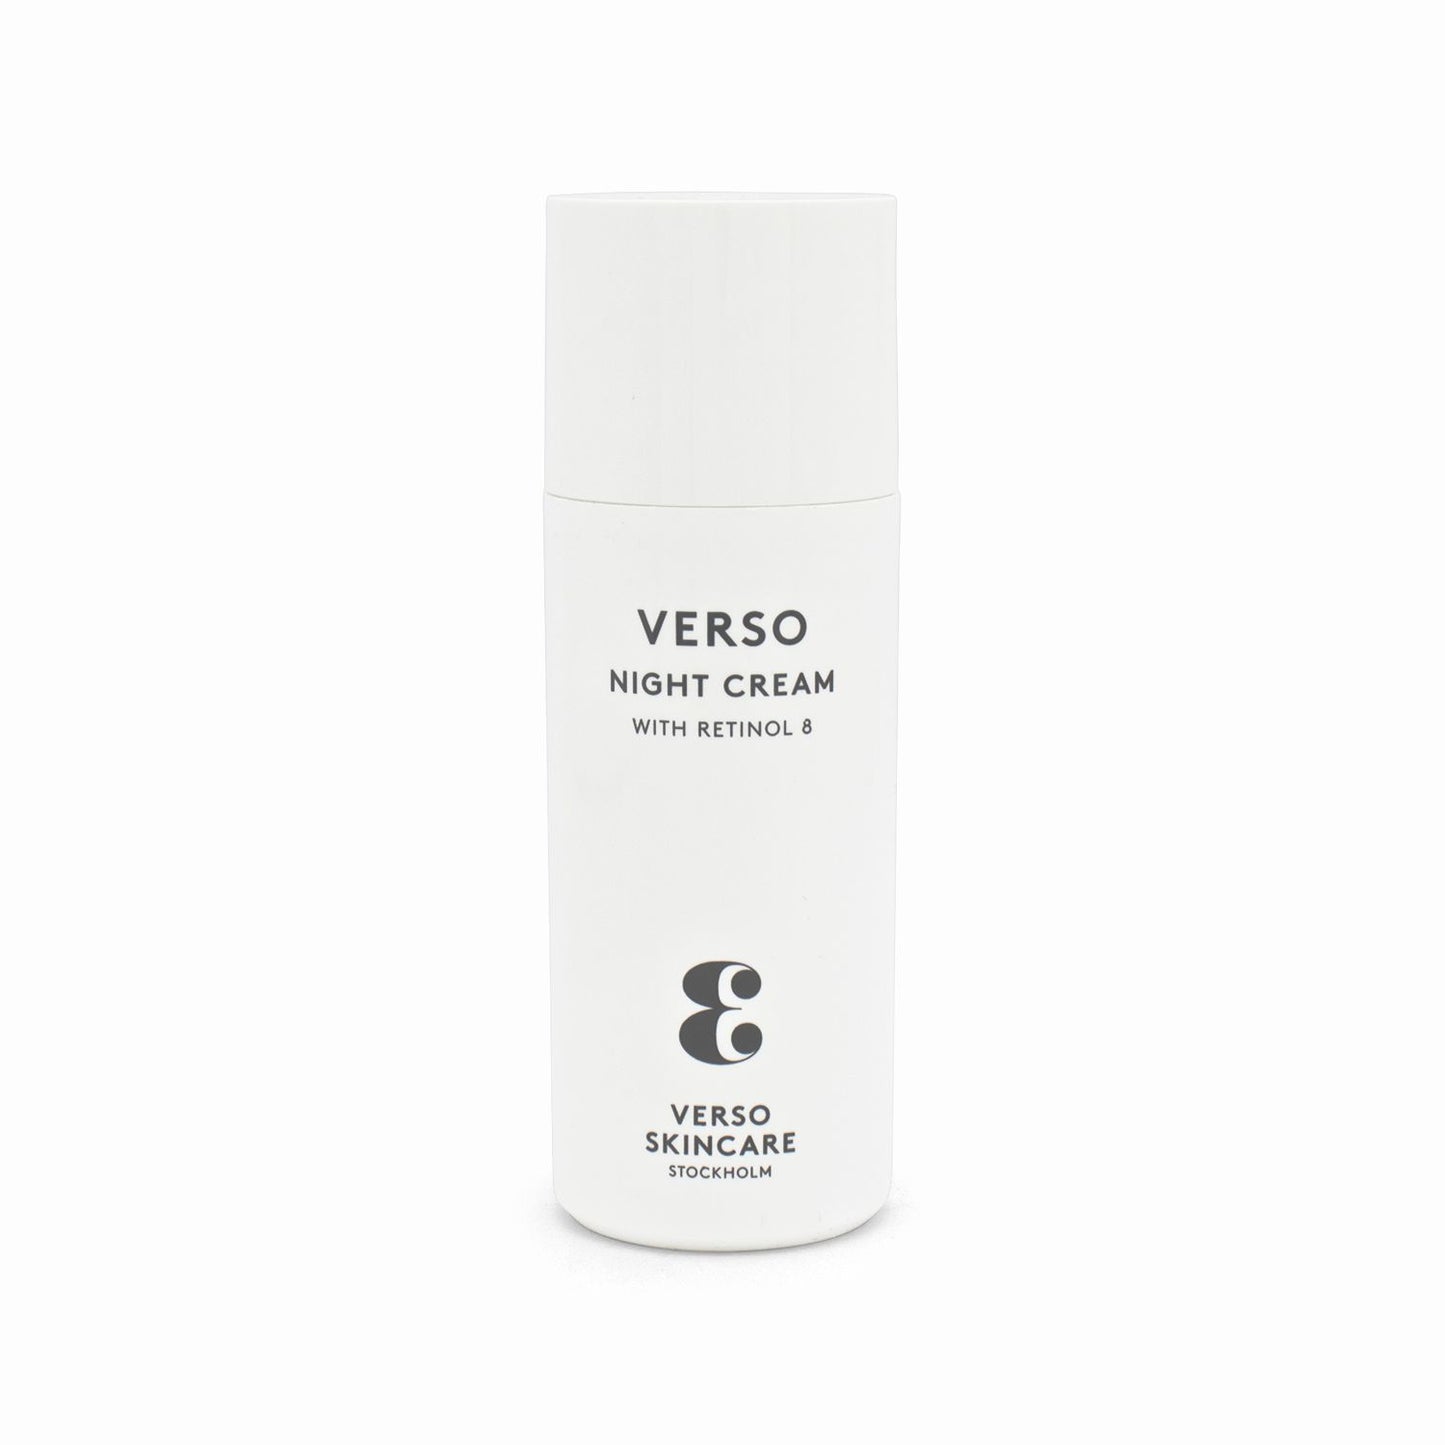 Verso Night Cream With Retinol 8 50ml - Imperfect Box